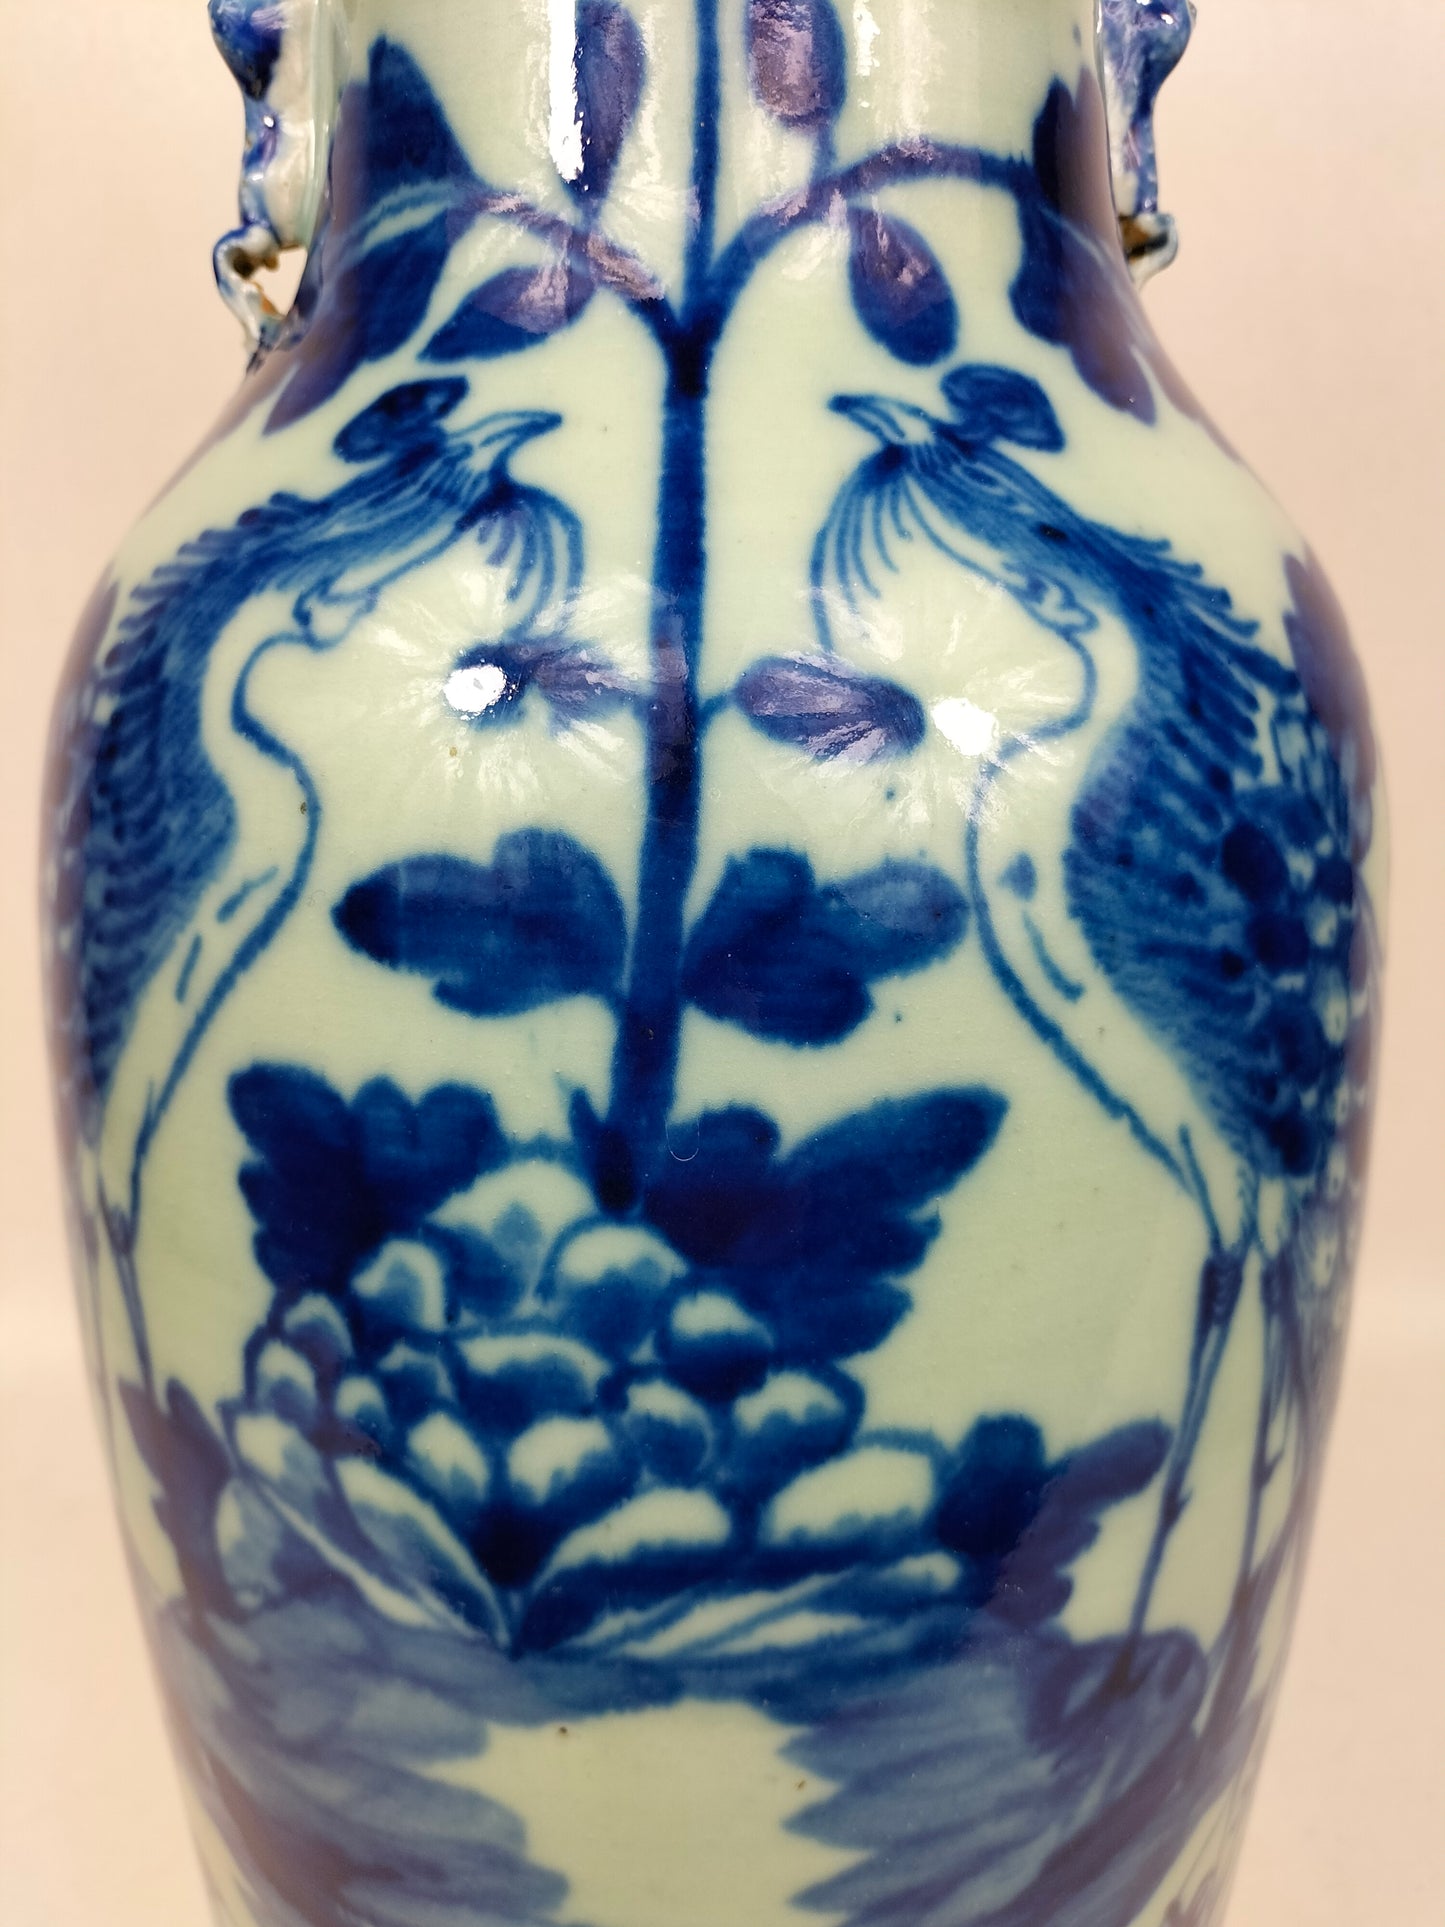 Grande vaso chinês antigo de cor celadon decorado com pássaros e flores // Dinastia Qing - século XIX